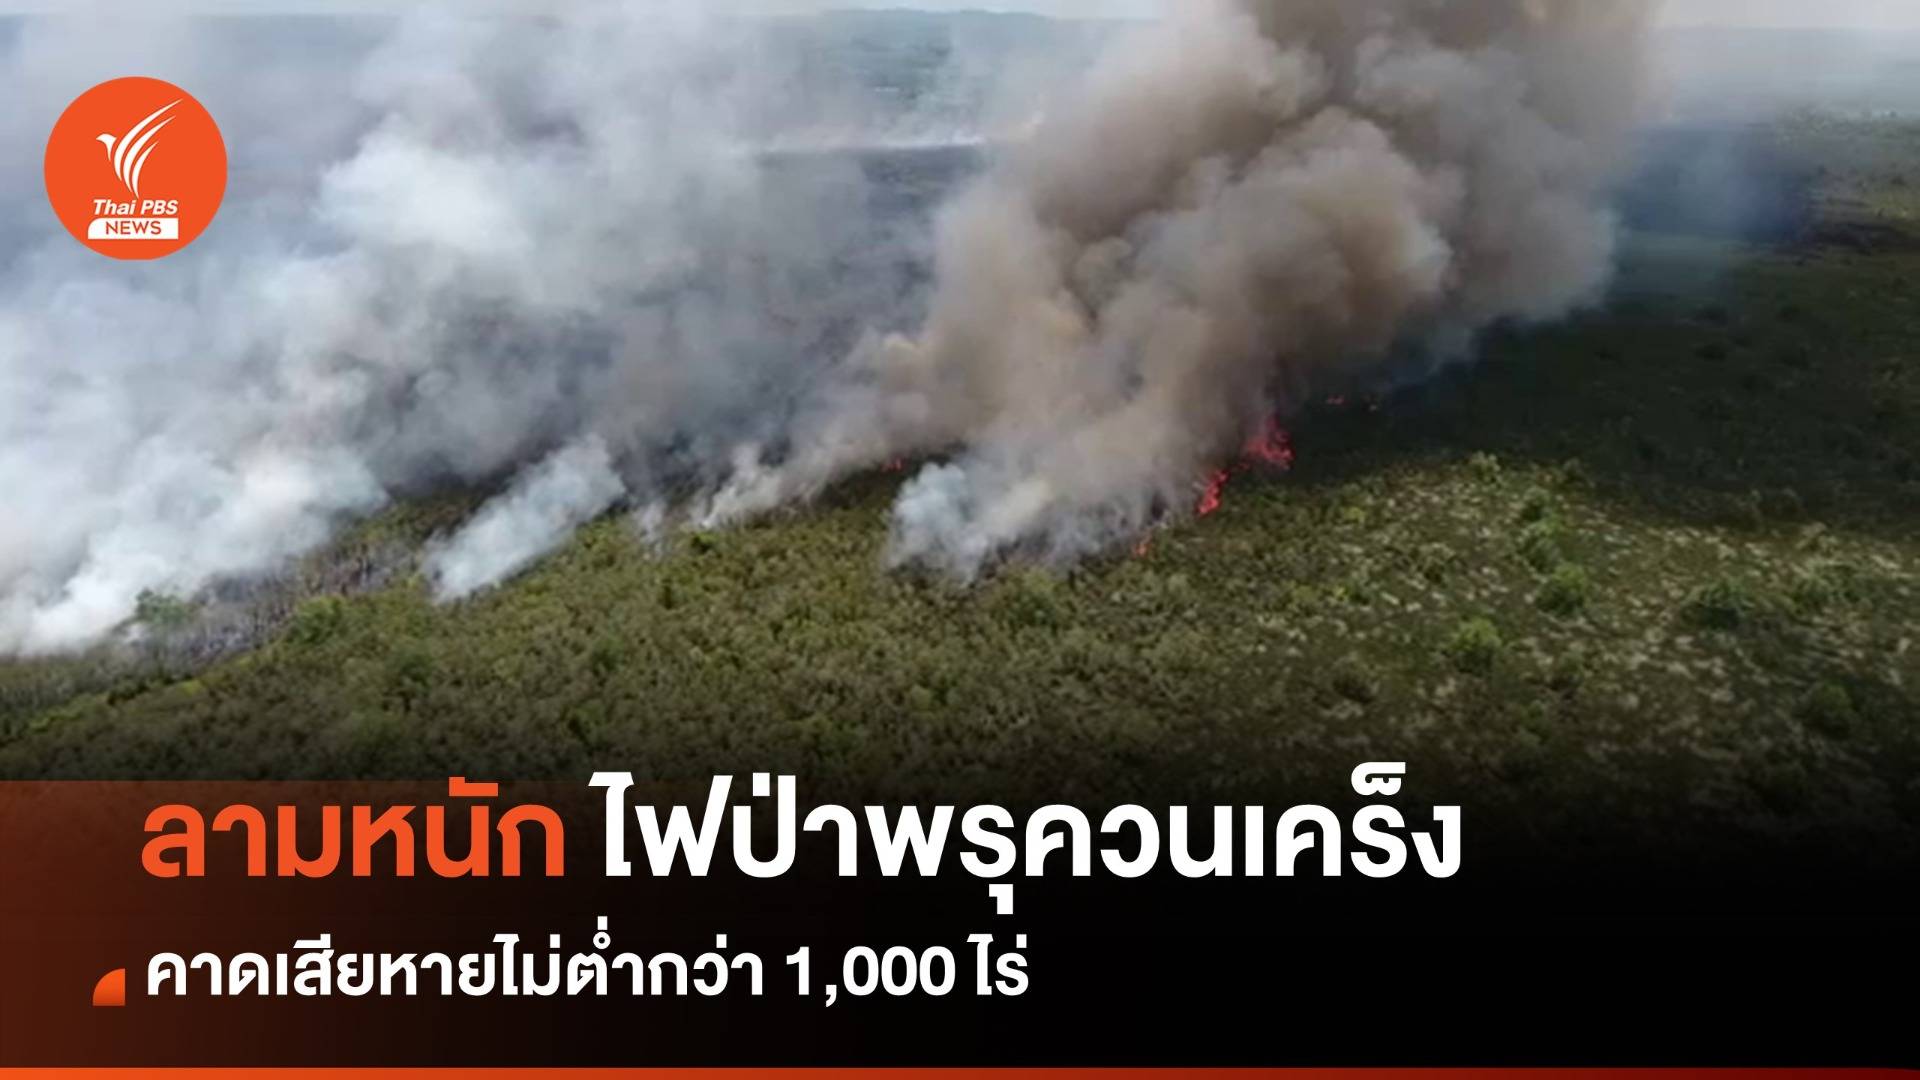 ไฟไหม้ป่าพรุควนเคร็งรอบใหม่ลามหนัก คาดเสียหายไม่ต่ำกว่า 1 พันไร่ 